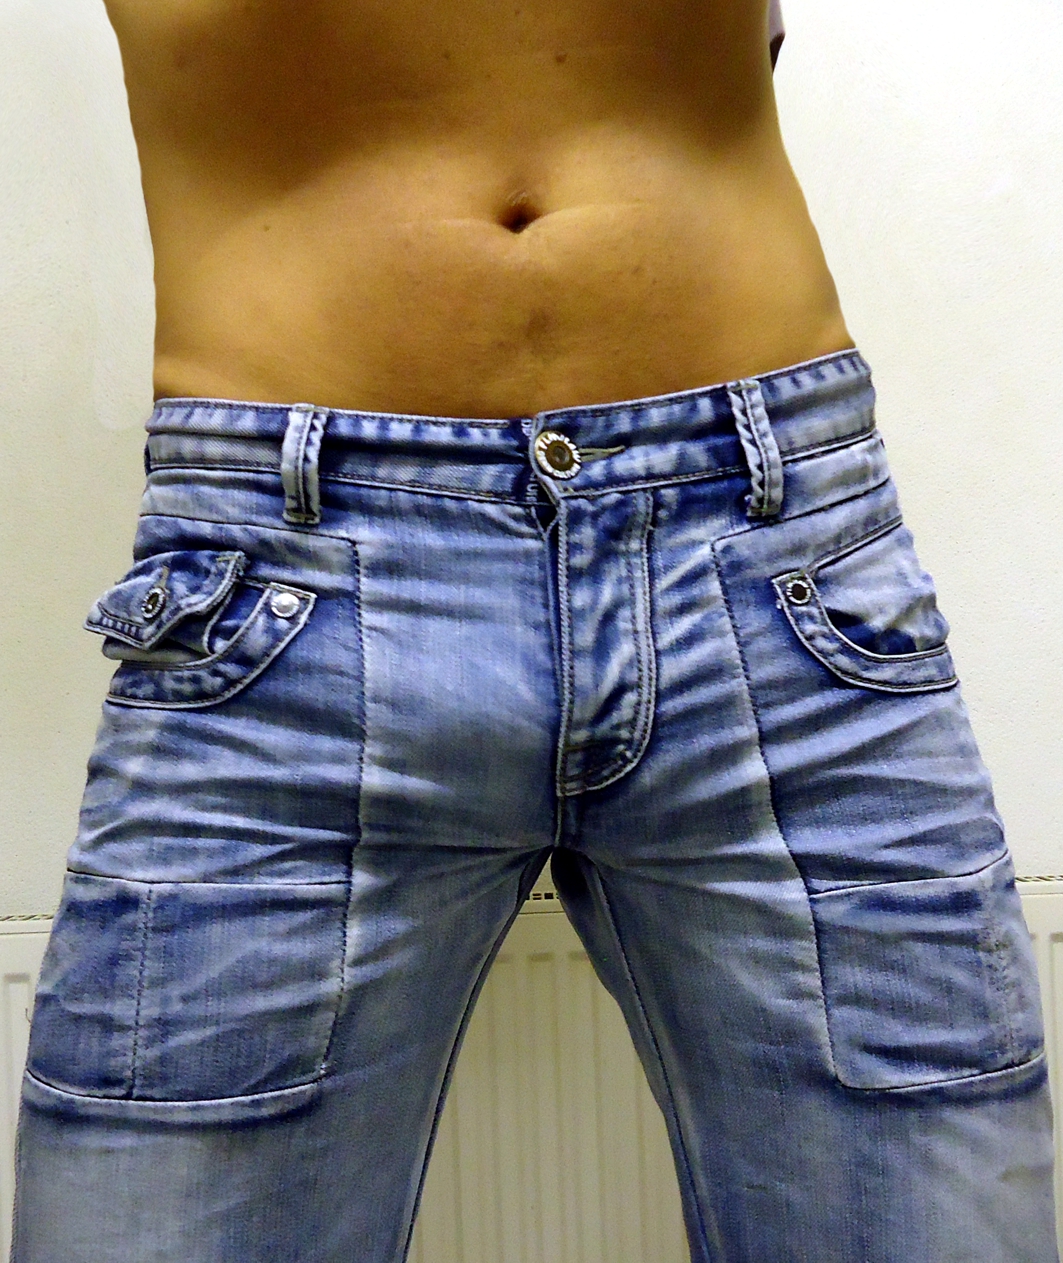 RAMON - Xy on Twitter: "#bulge #jeans #gay #levis #gayjeans #guy  https://t.co/fLbHJk78iS" / Twitter